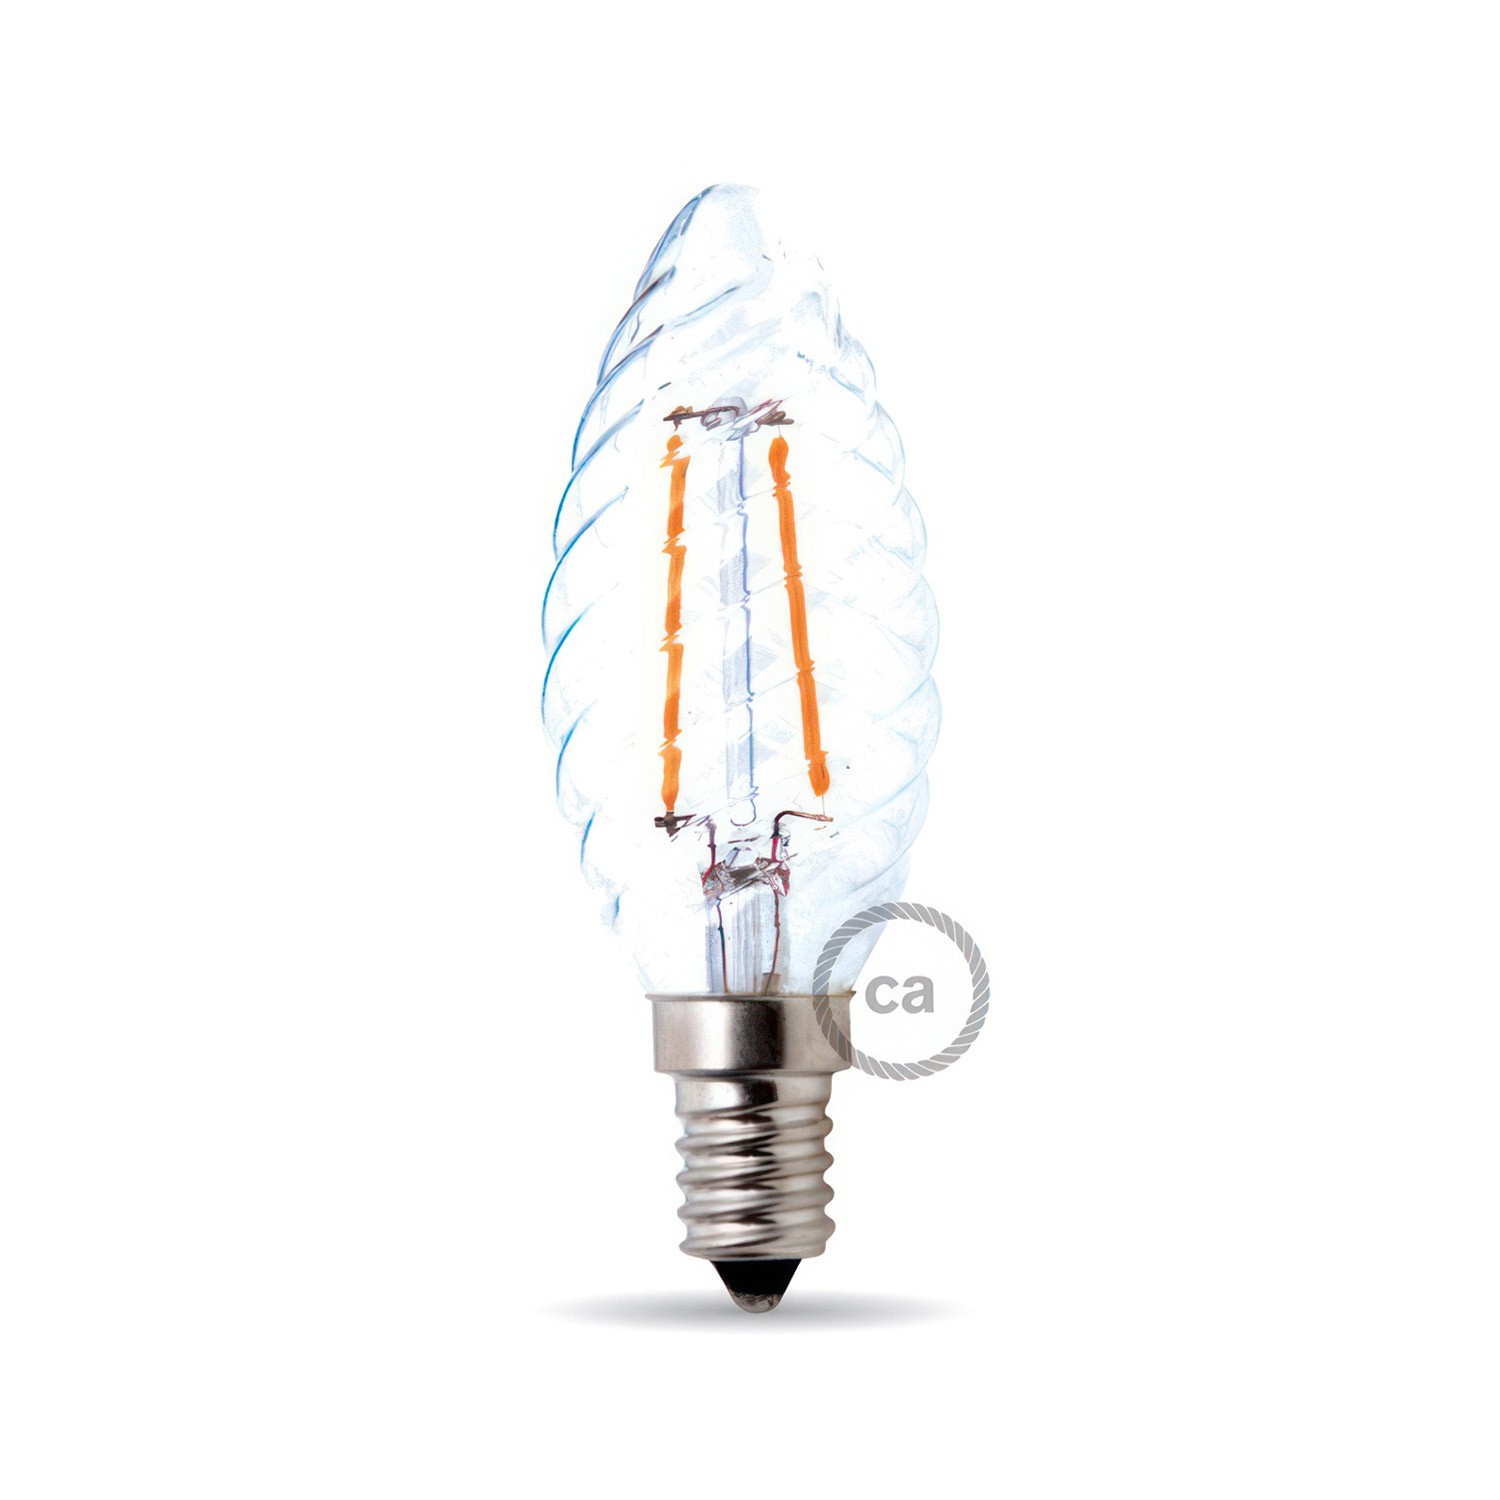 LED-Glühbirne 4W 440Lm E14, Klar spiralförmig mit Filamentfaden